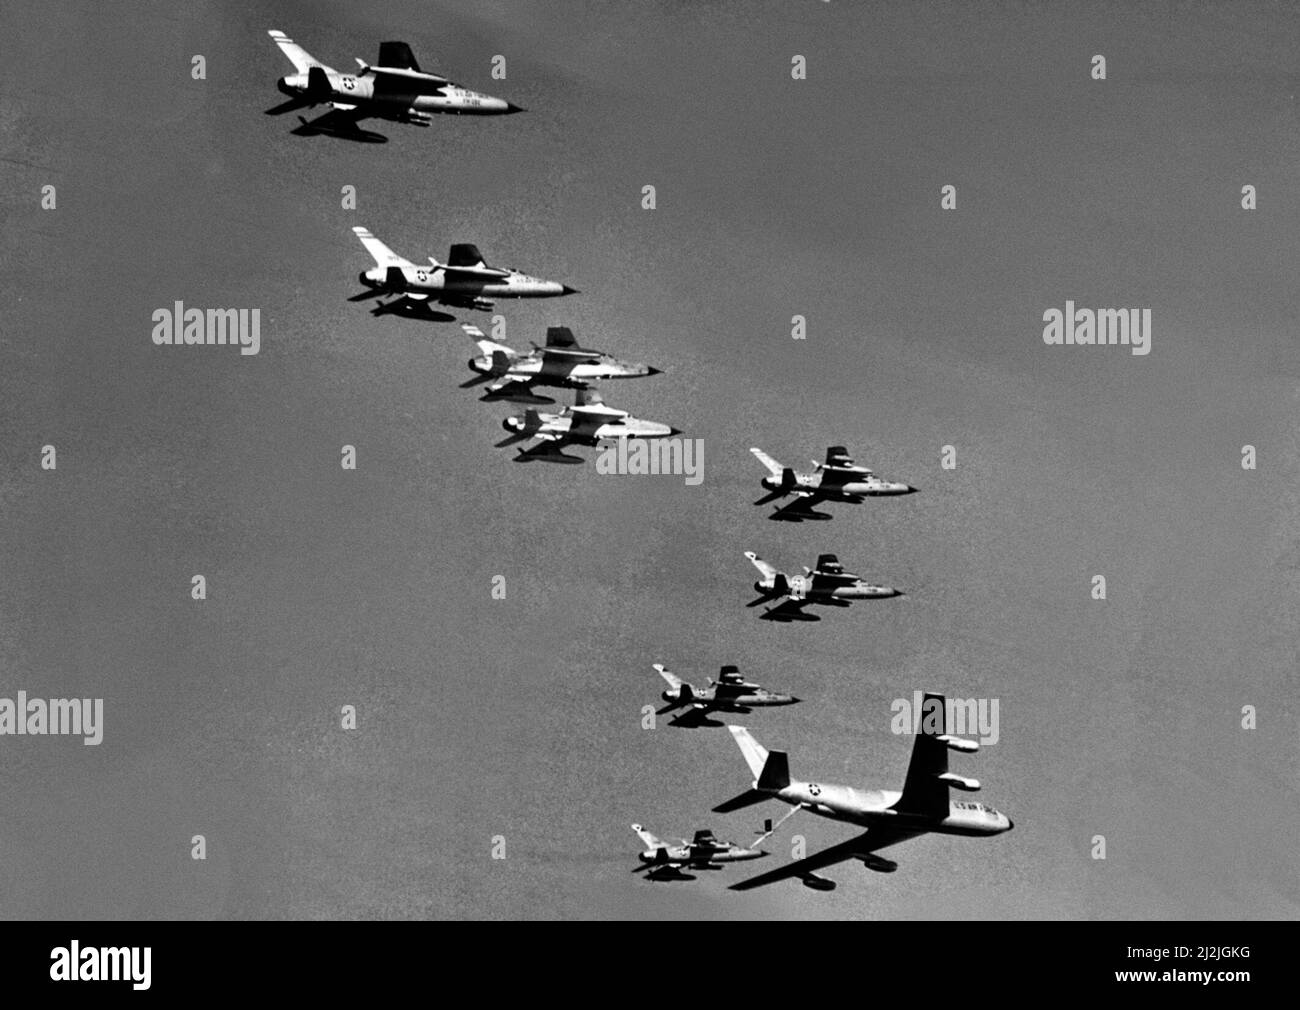 États-Unis Air Force Republic F-105D les Thunderfiers reçoivent du carburant d'un Boeing KC-135A Stratotanker en route vers des cibles au nord du Vietnam, décembre 1965 Banque D'Images